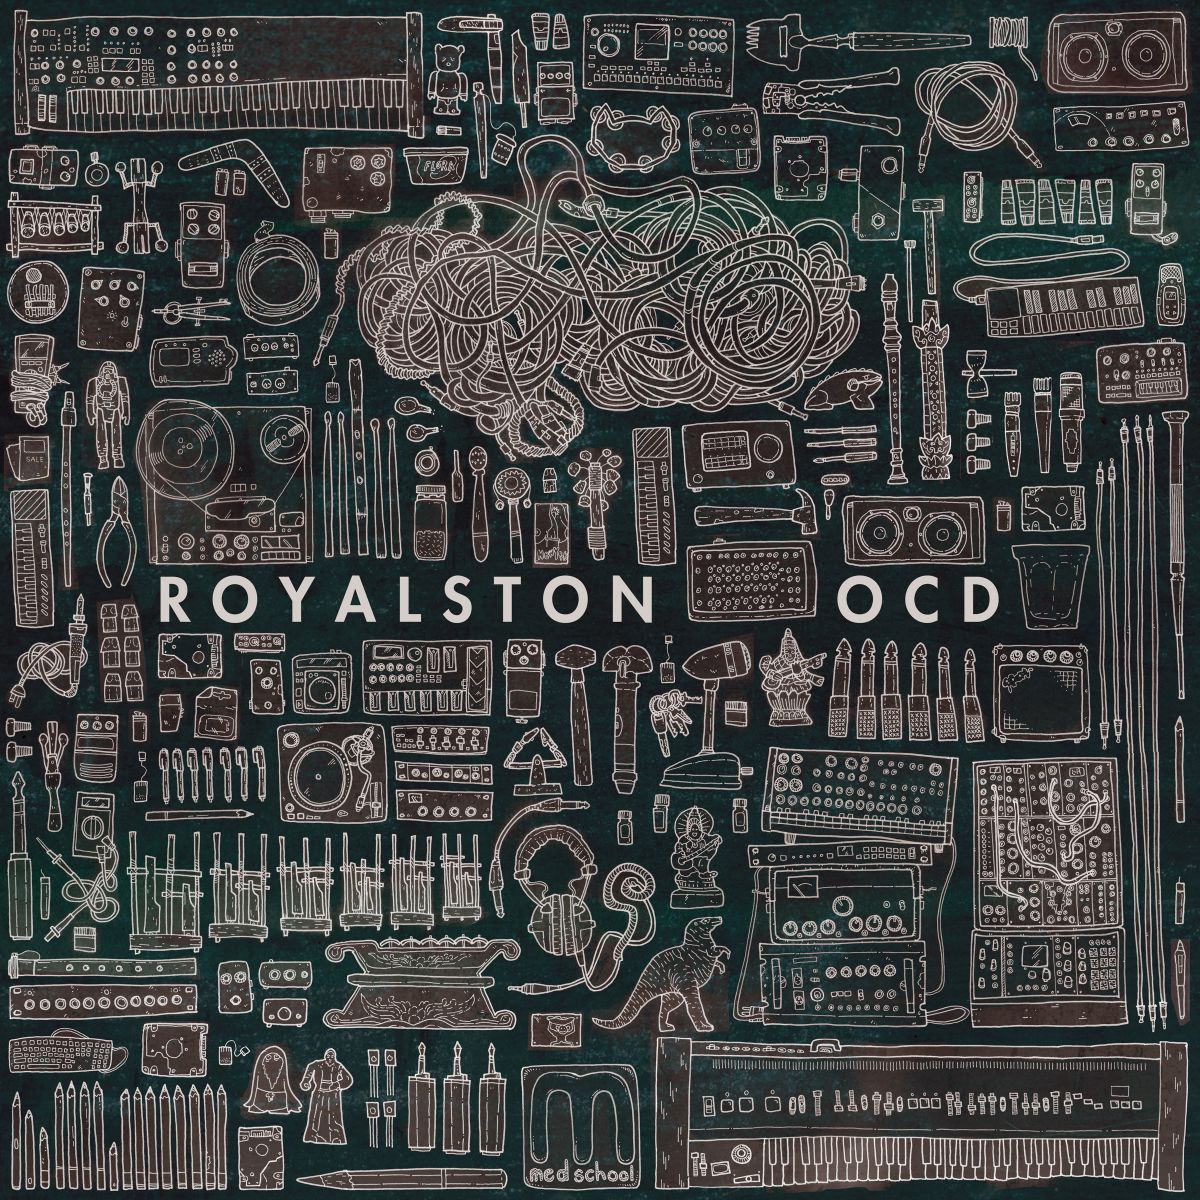 Royalston - OCD [MEDIC39](2014)